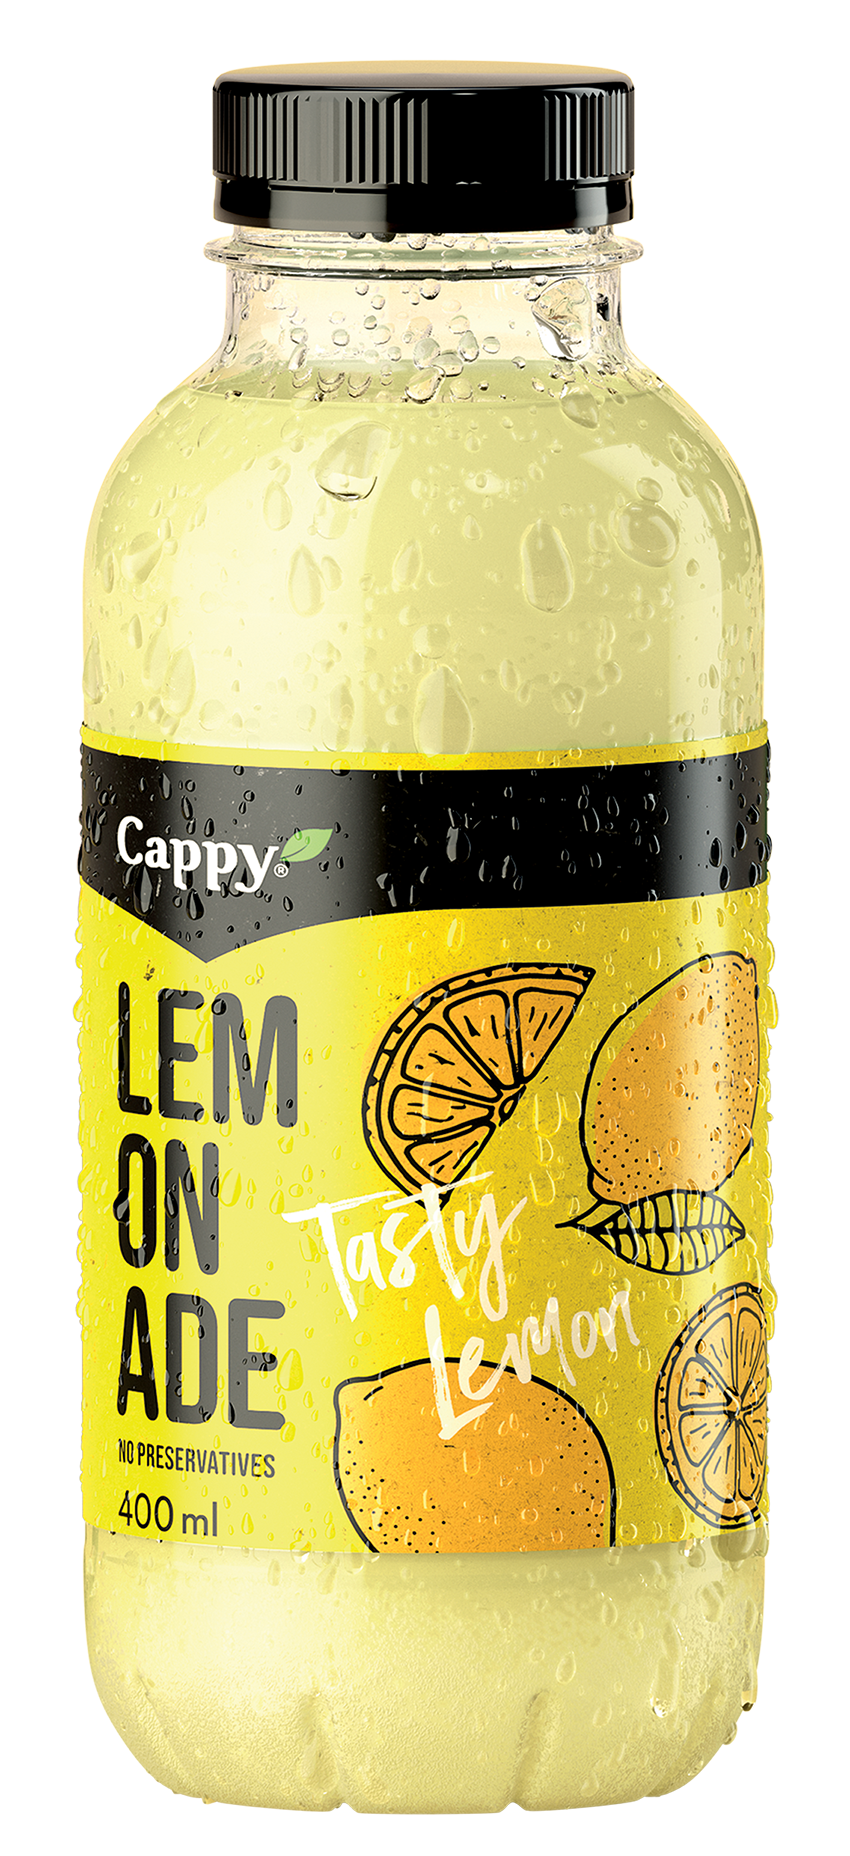 Cappy-lemonade-Lemon-bottle-400ml_2021